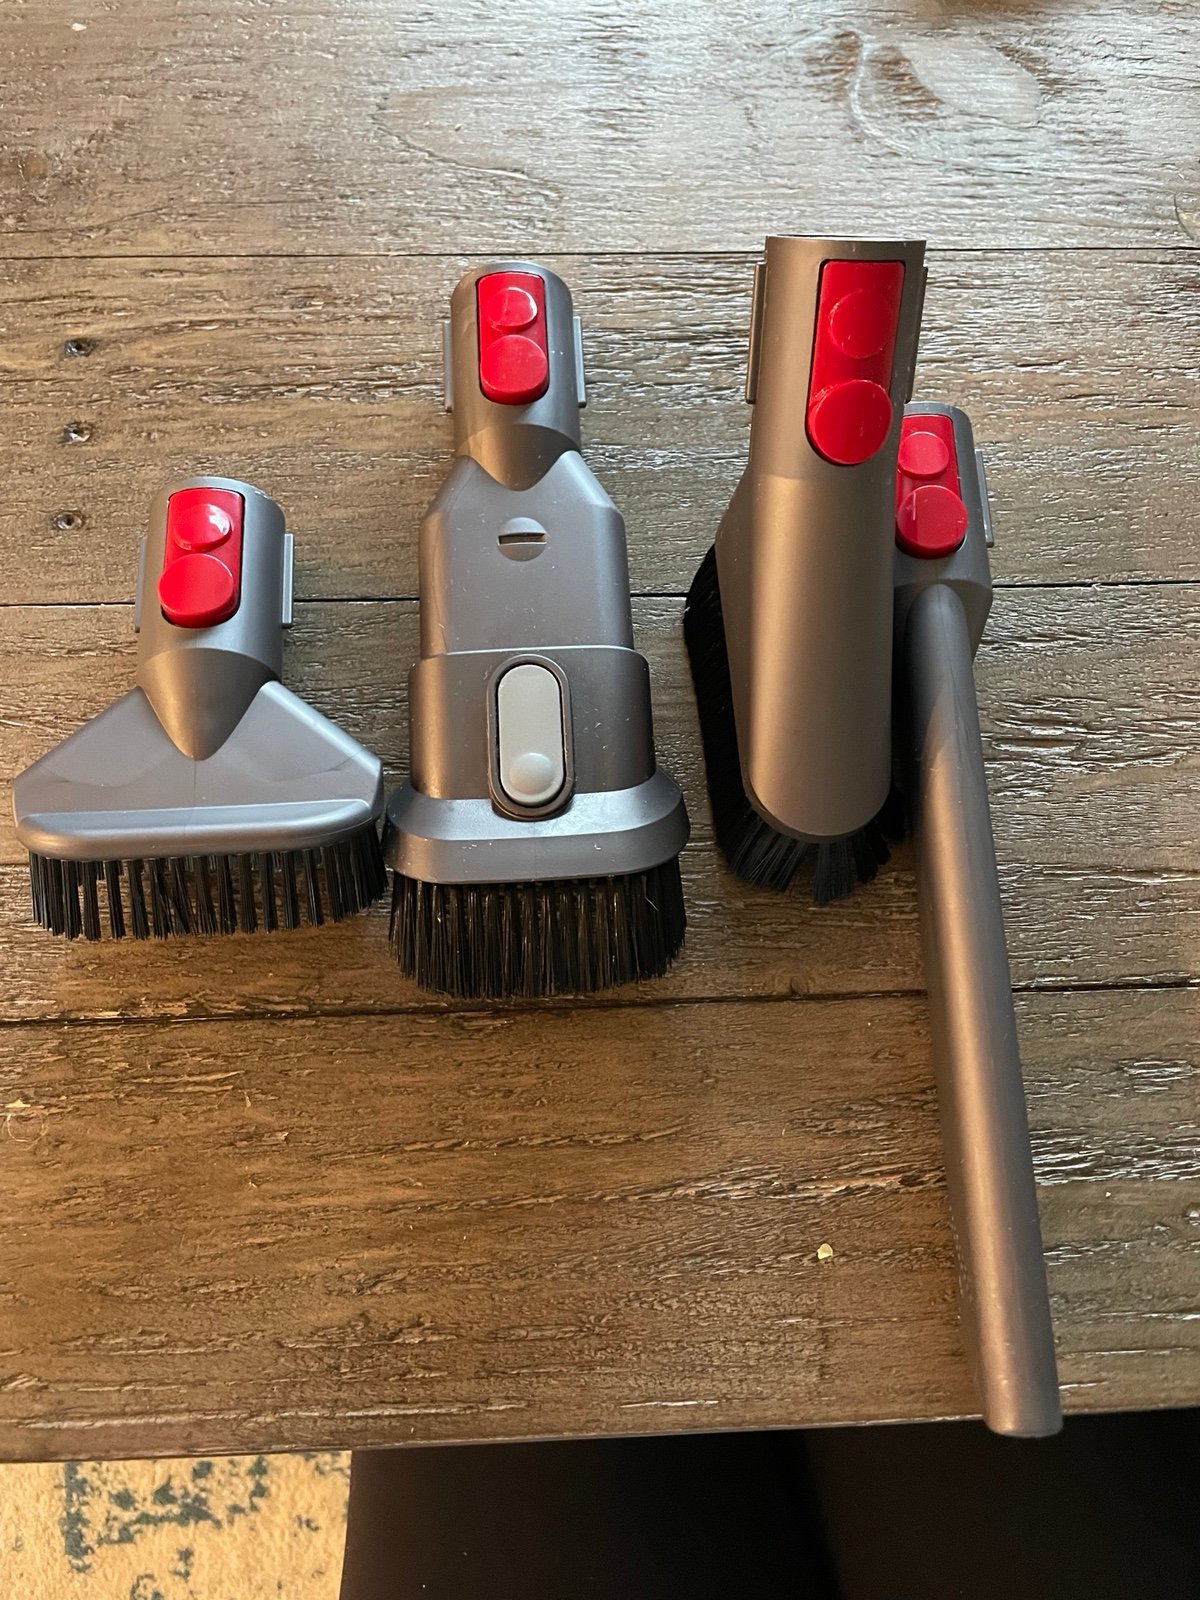 Dyson vacuum v8 attachments/brushes c1POjyrWe